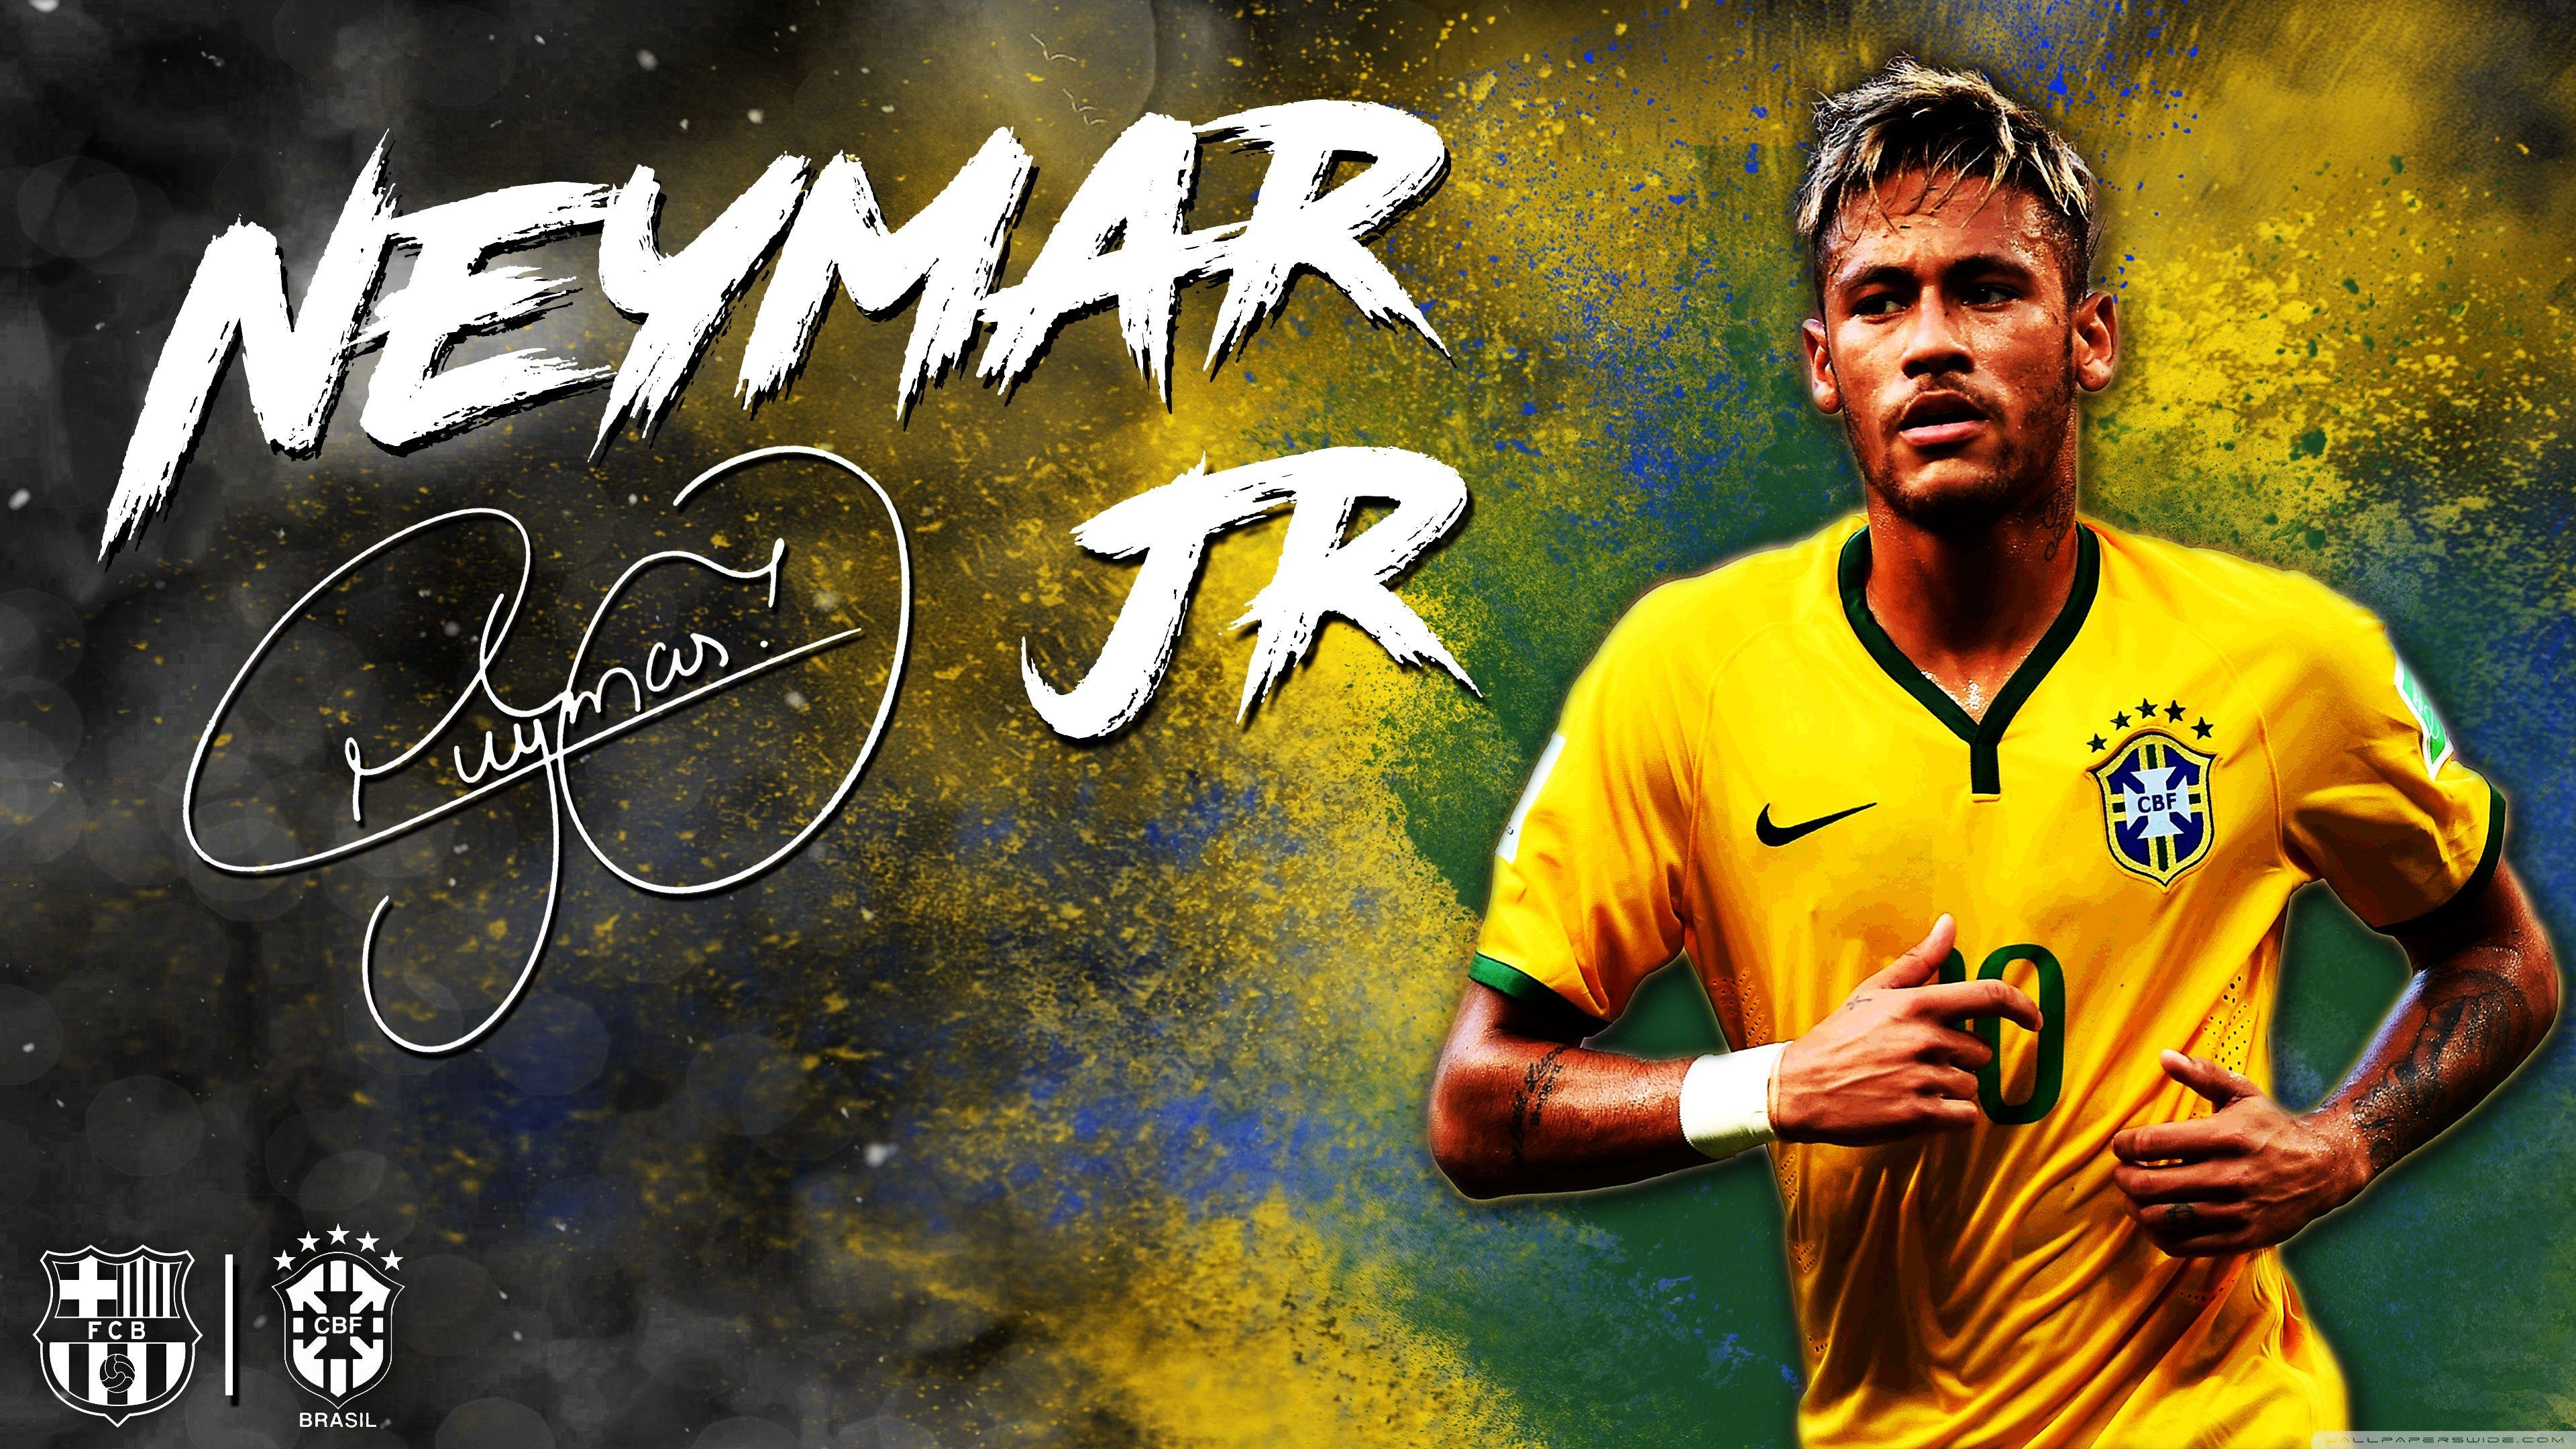  Neymar  Wallpapers  Top Free Neymar  Backgrounds  